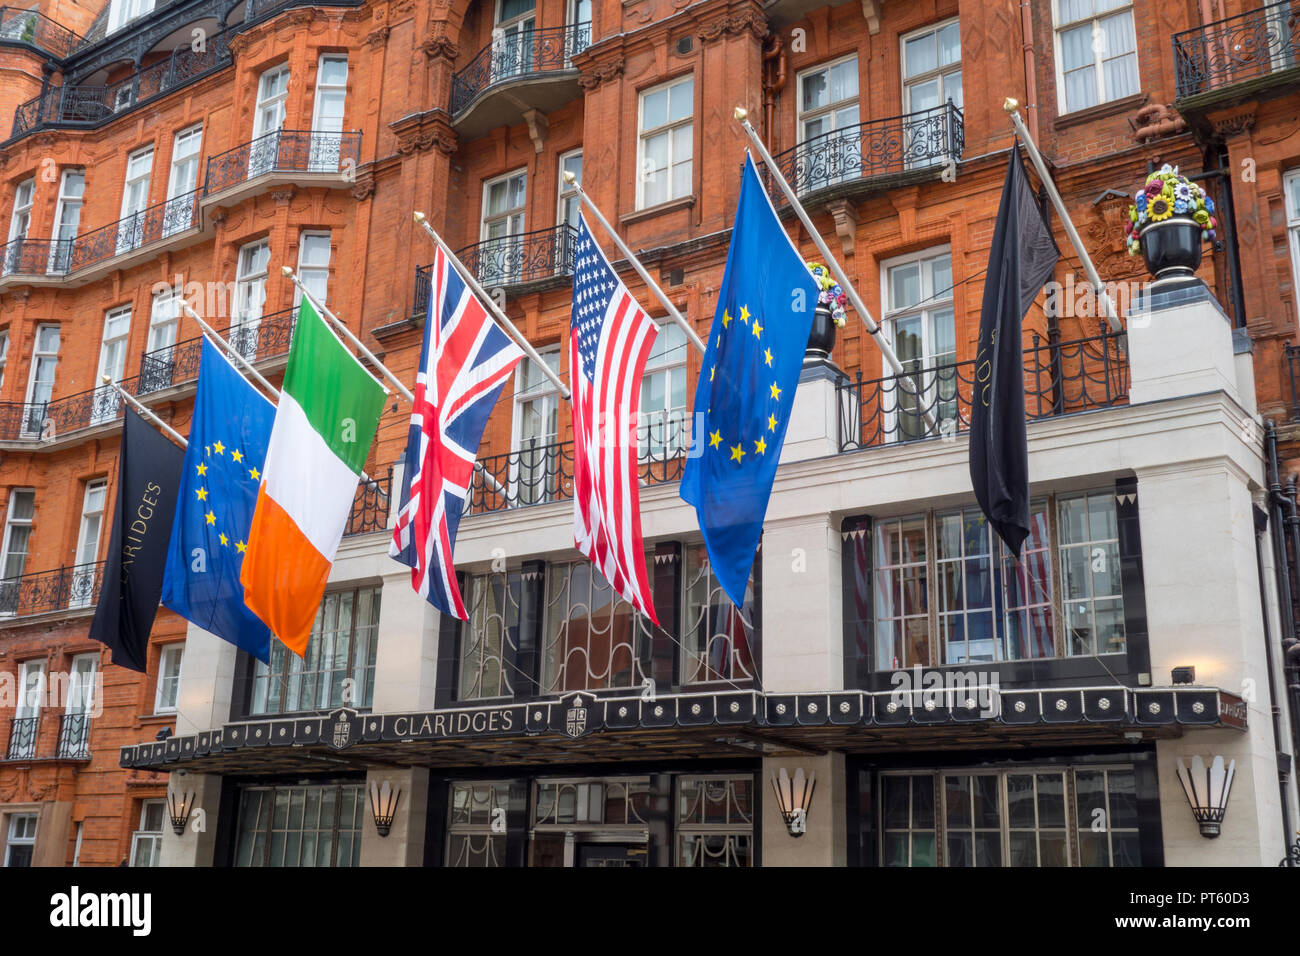 Banderas internacionales fuera de la entrada y la fachada de edificio del hotel Claridges, Mayfair, Westminster, London, UK Foto de stock